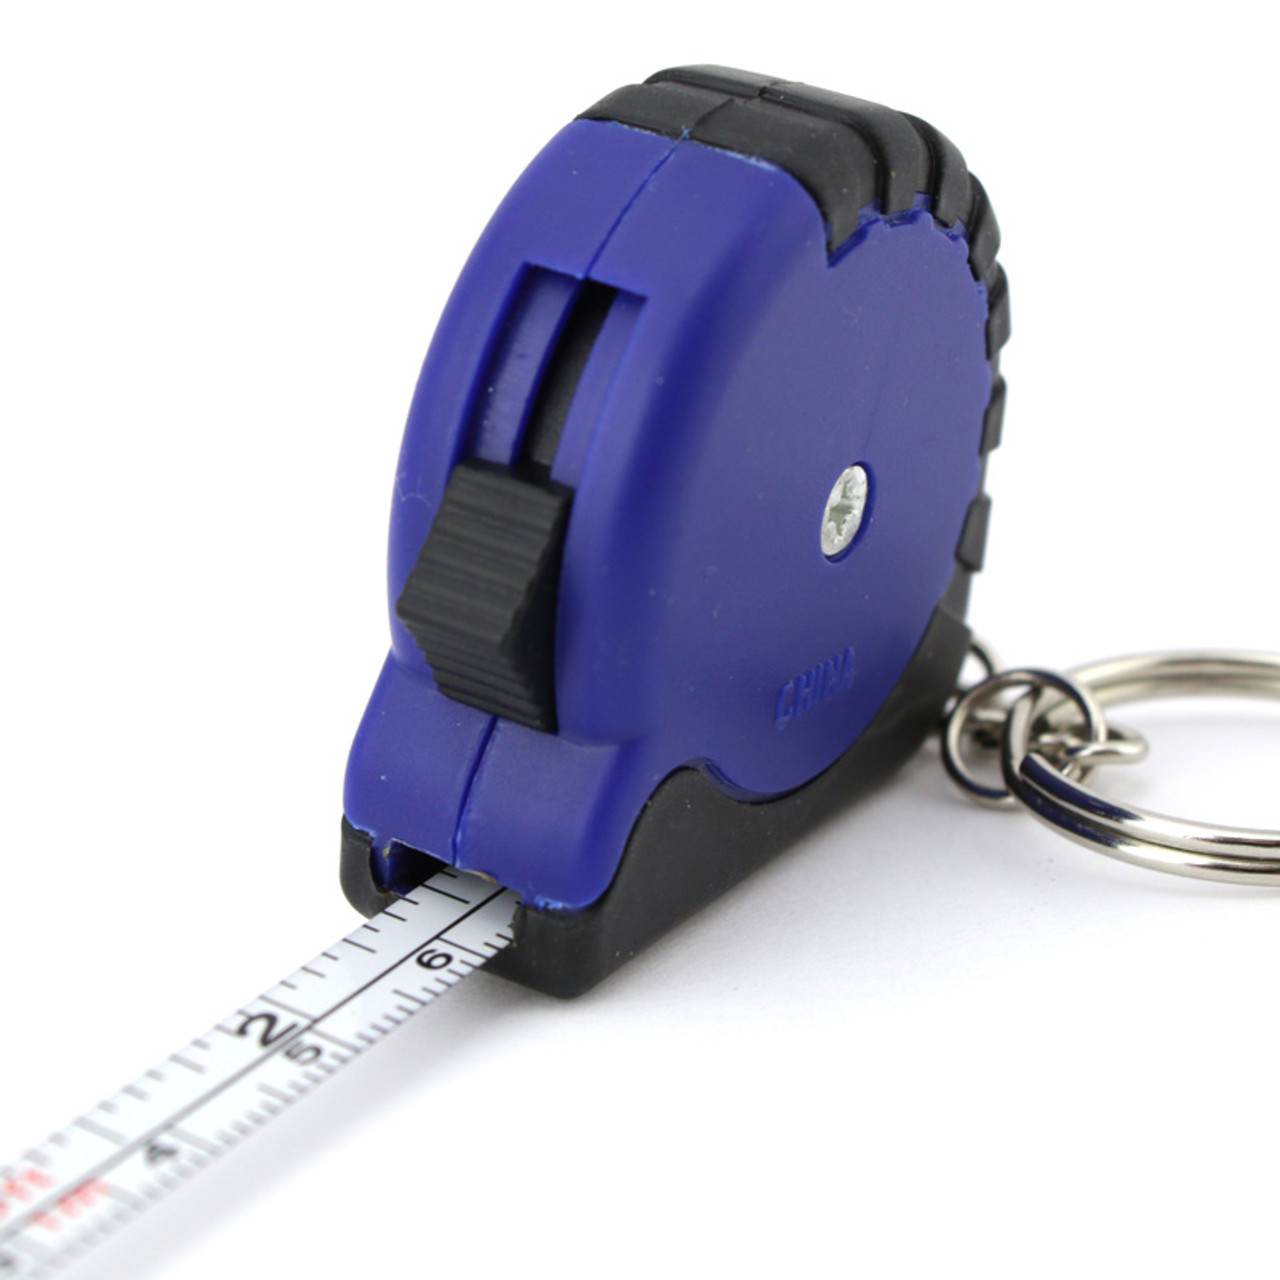 Mini Tape Measure & Keychain